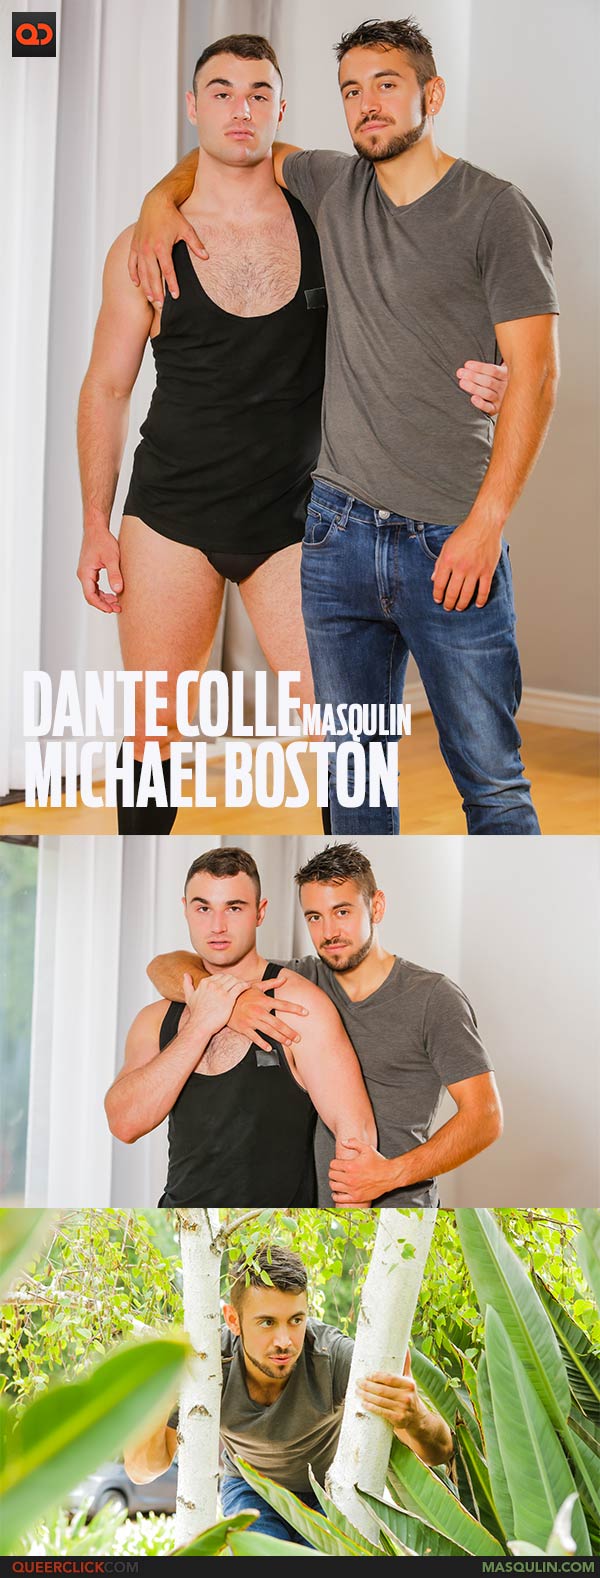 Masqulin: Dante Colle and Michael Boston